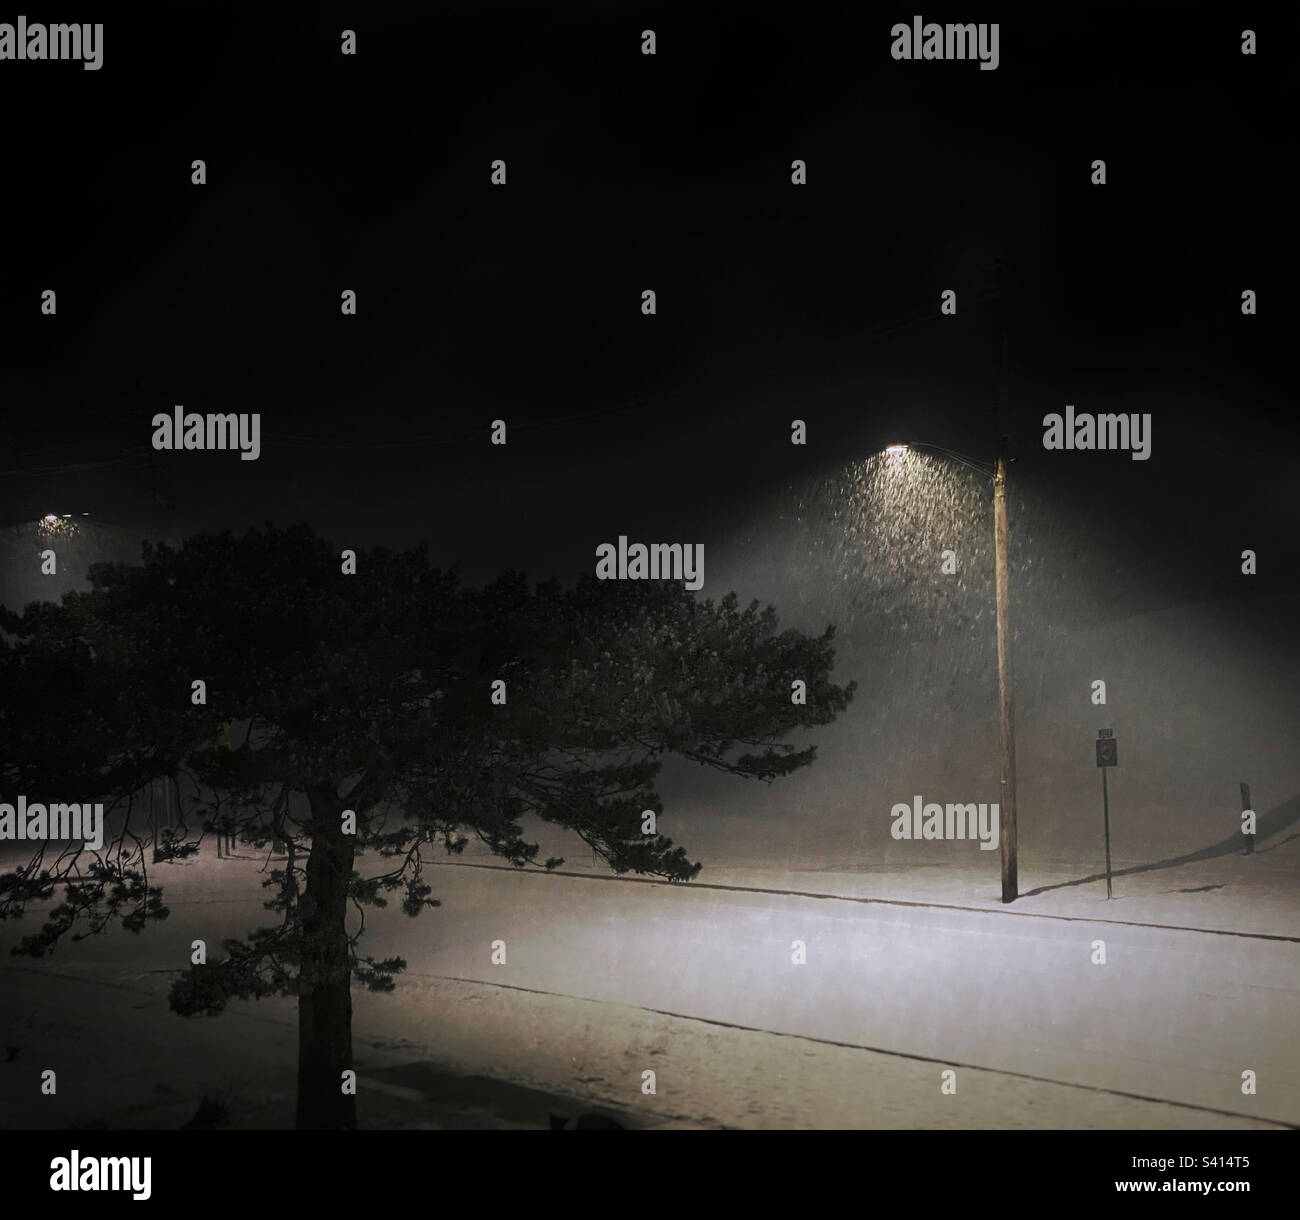 Neige tombant dans des cônes de lumière sous les réverbères pendant une nuit d'hiver tranquille Banque D'Images